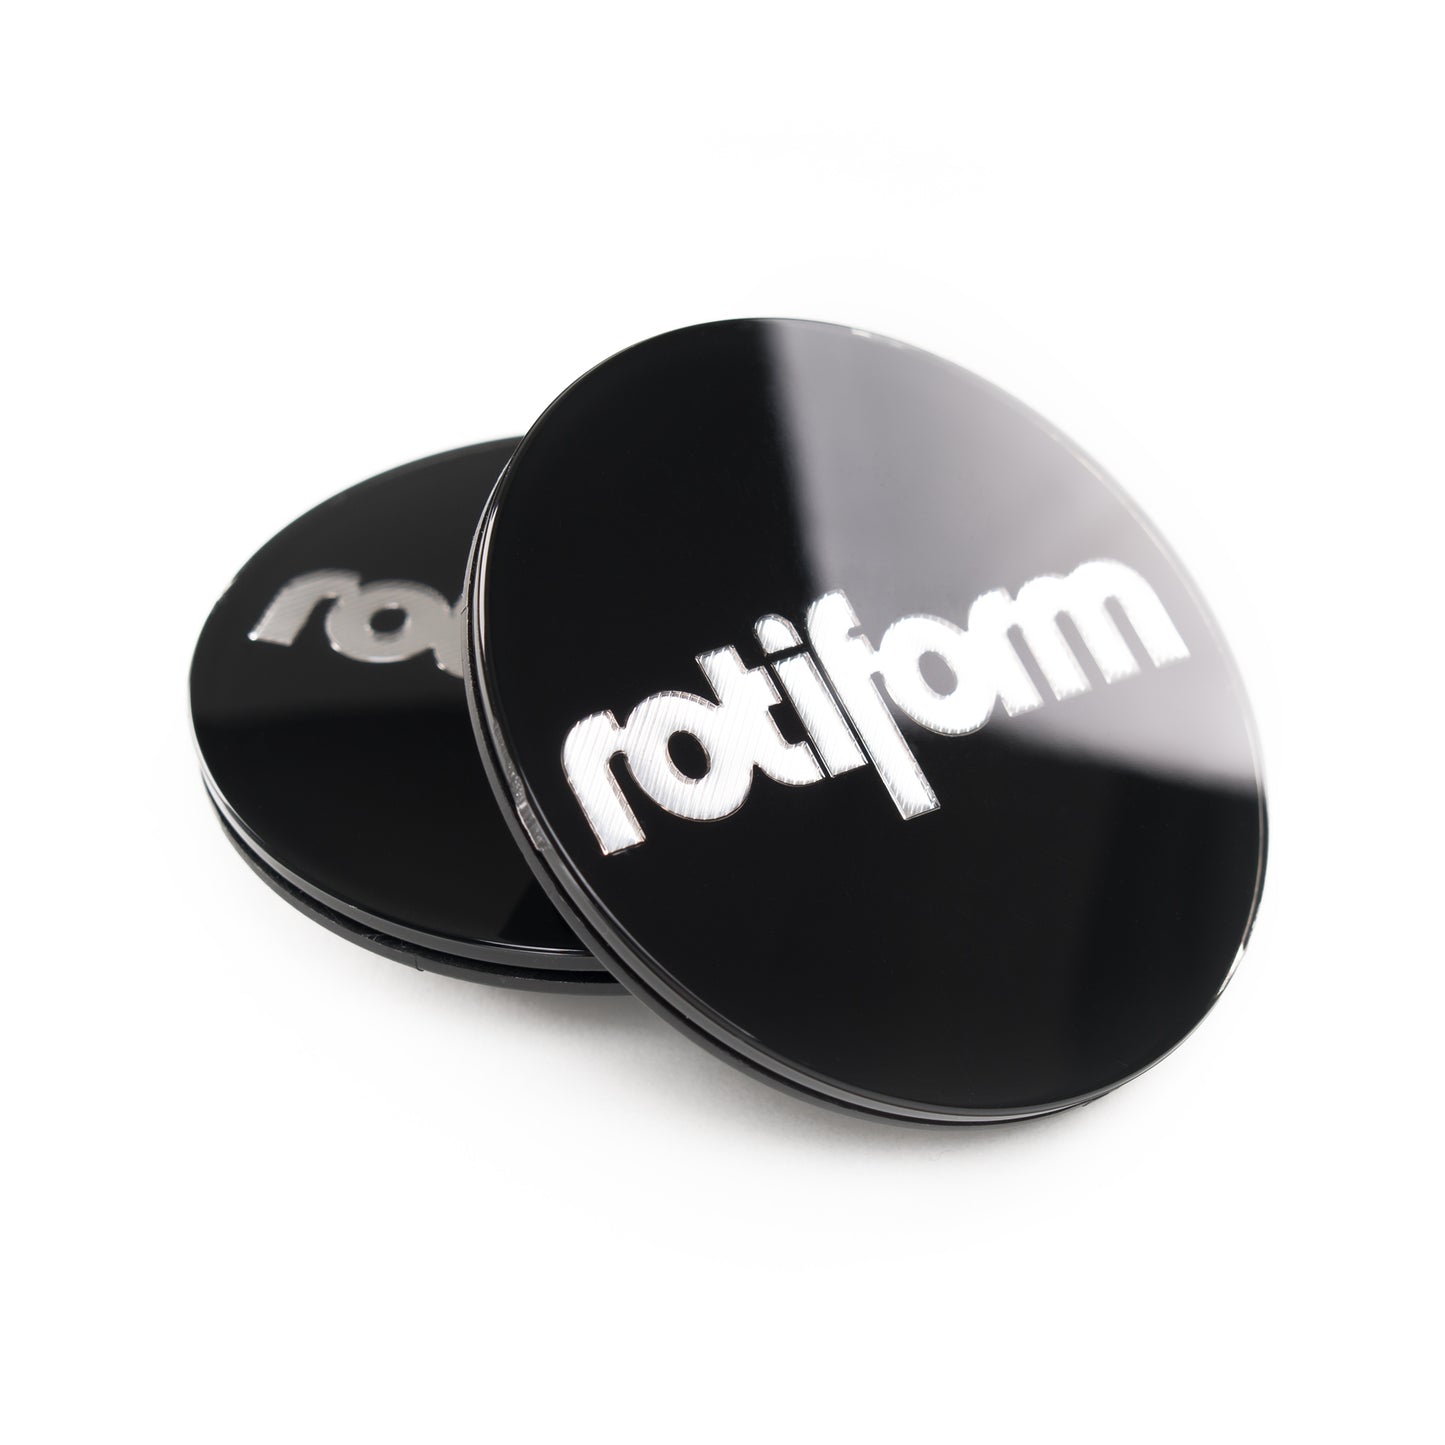 Rotiform Emblem für Zentralverschluss in Schwarz / Silber